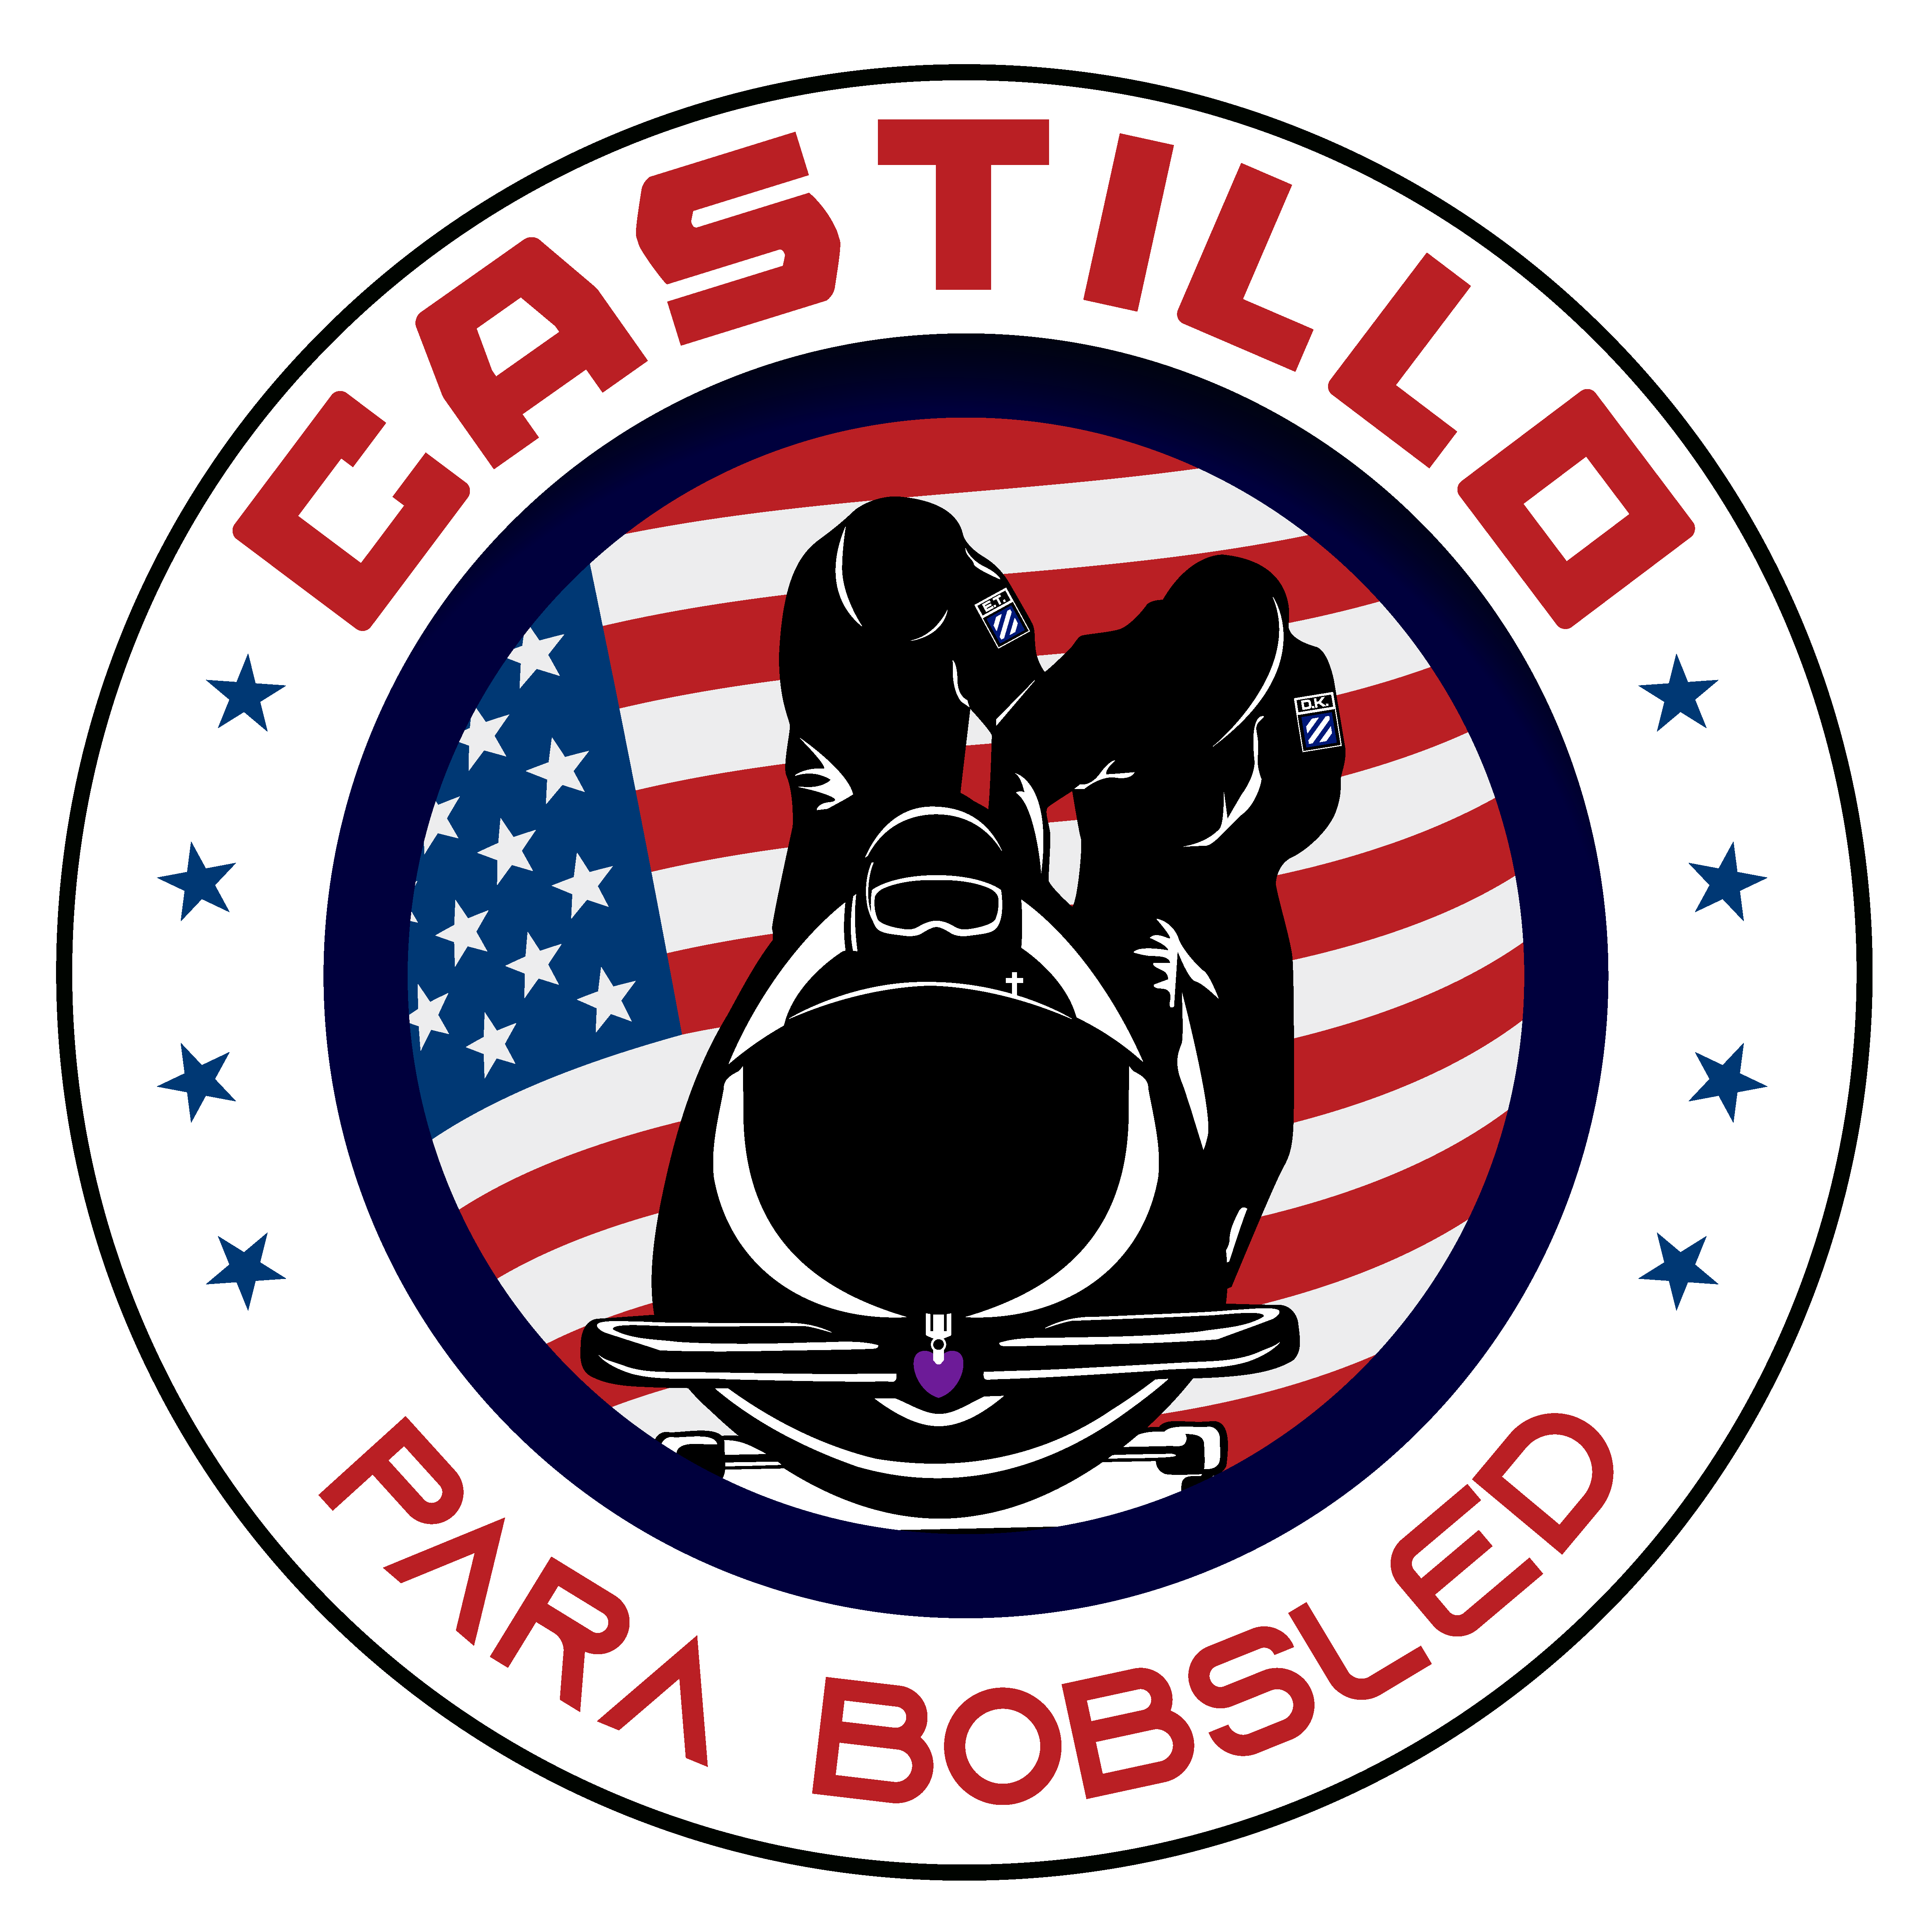 Will Castillo USA Parabobsled logo